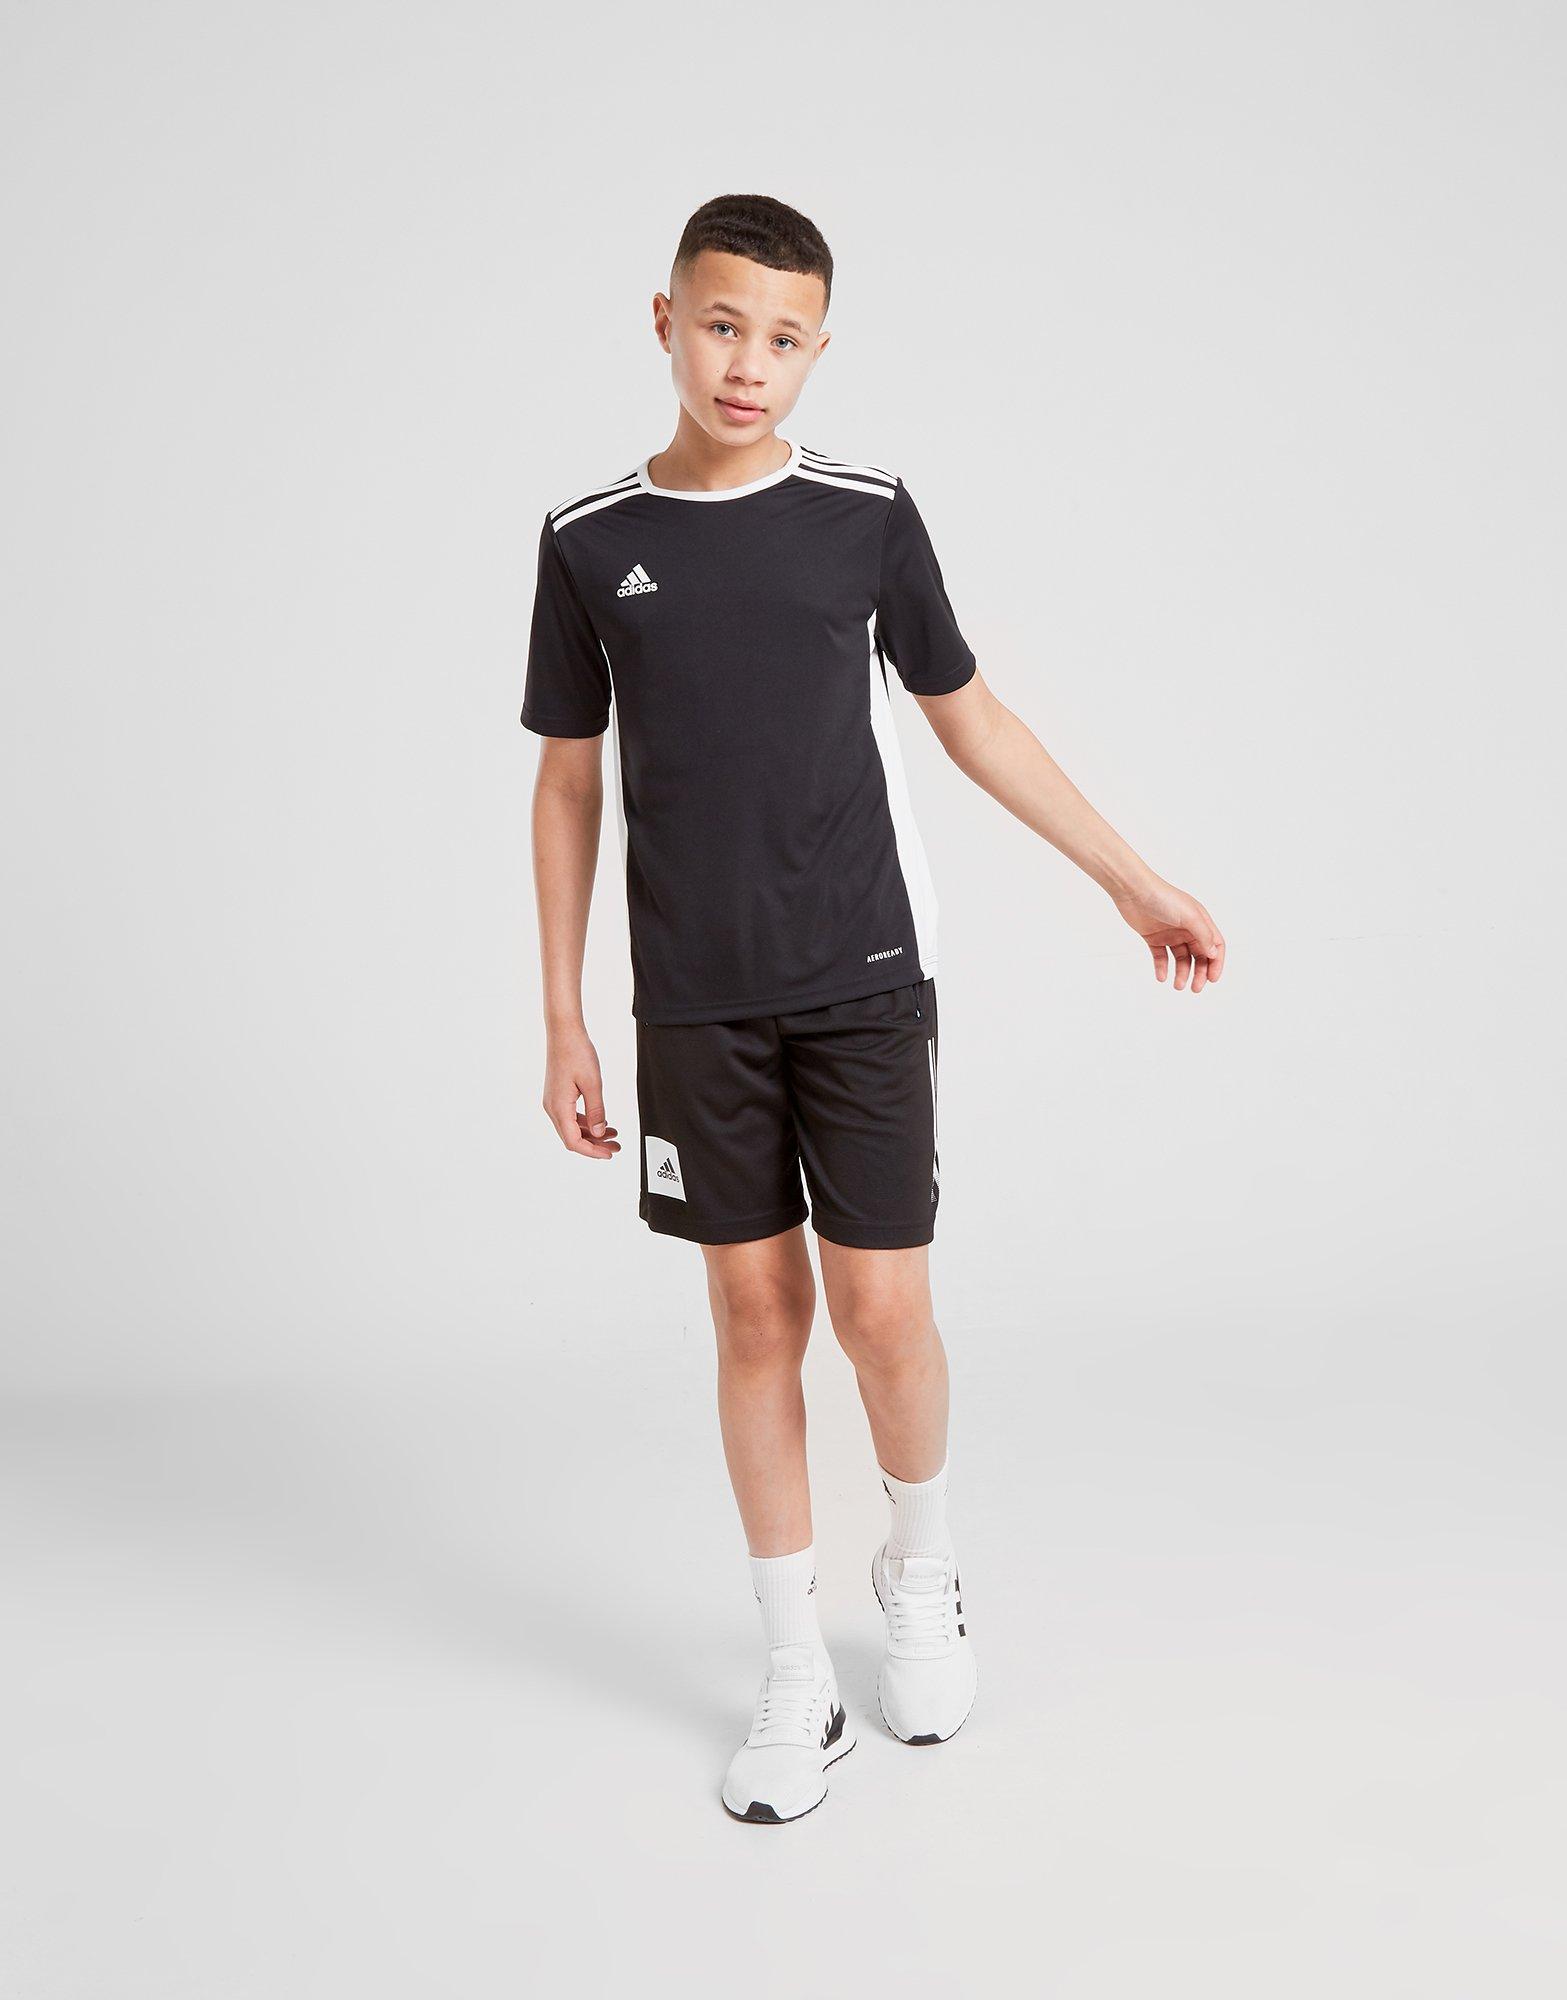 adidas entrada sports t shirt and shorts set